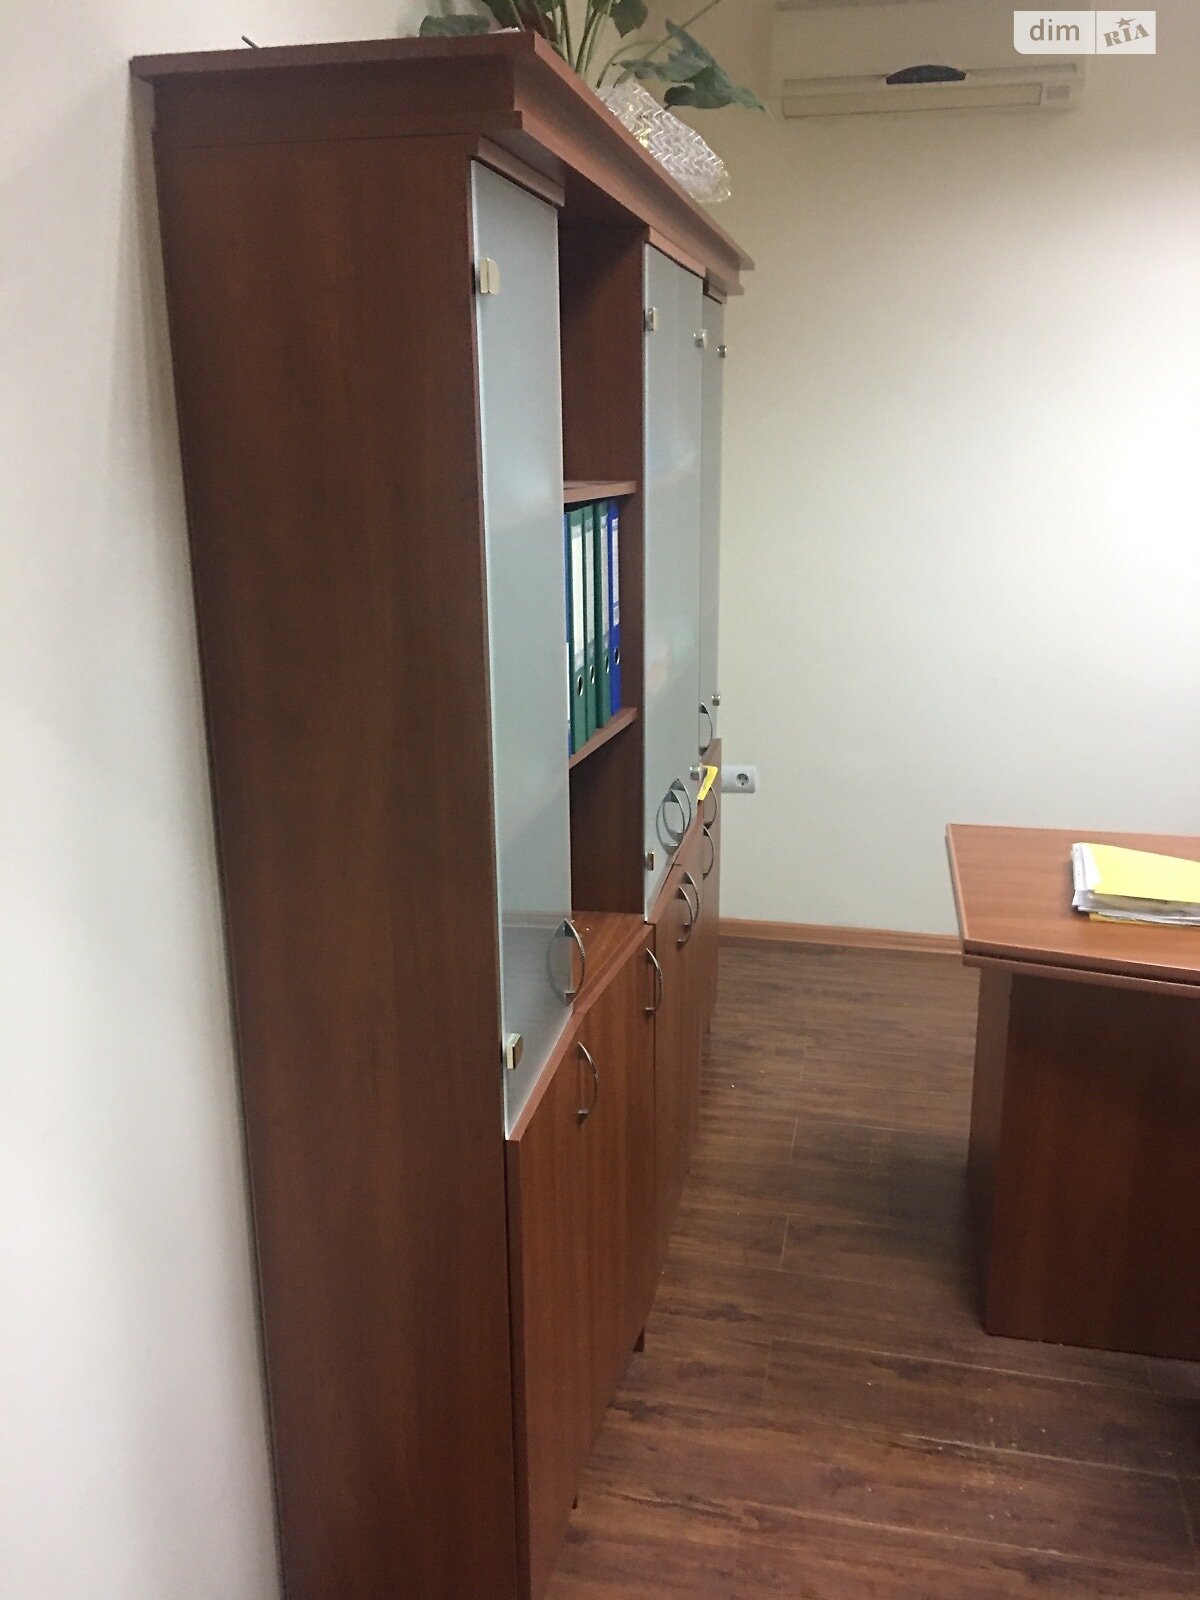 Оренда офісного приміщення в Тернополі, Шашкевича вулиця, приміщень - 3, поверх - 2 фото 1